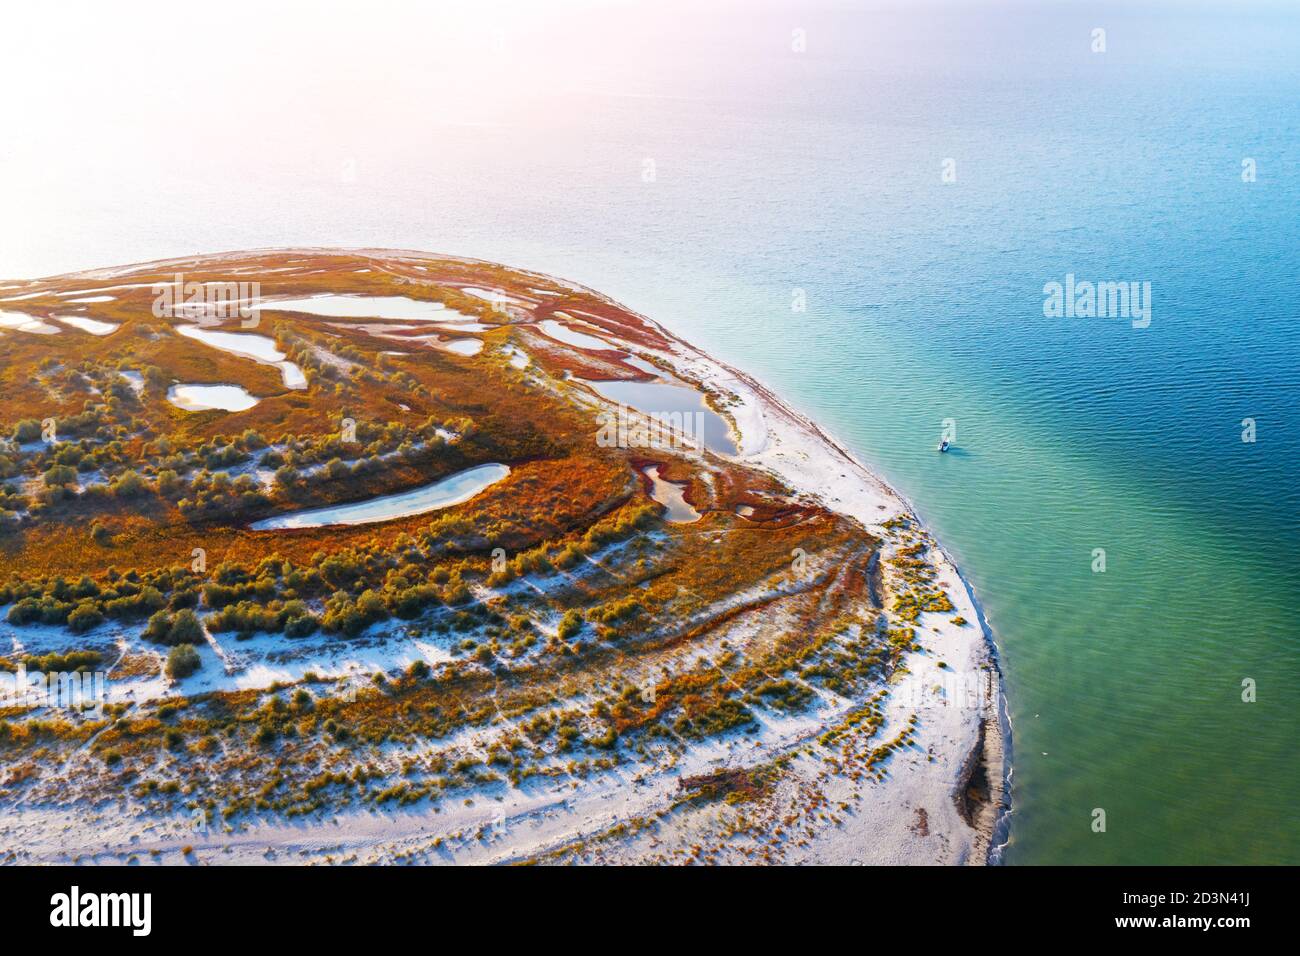 Yate solitario cerca de la playa en la costa del Mar Negro en la isla Dgarilgach, Ucrania. Fotografía de paisajes Foto de stock